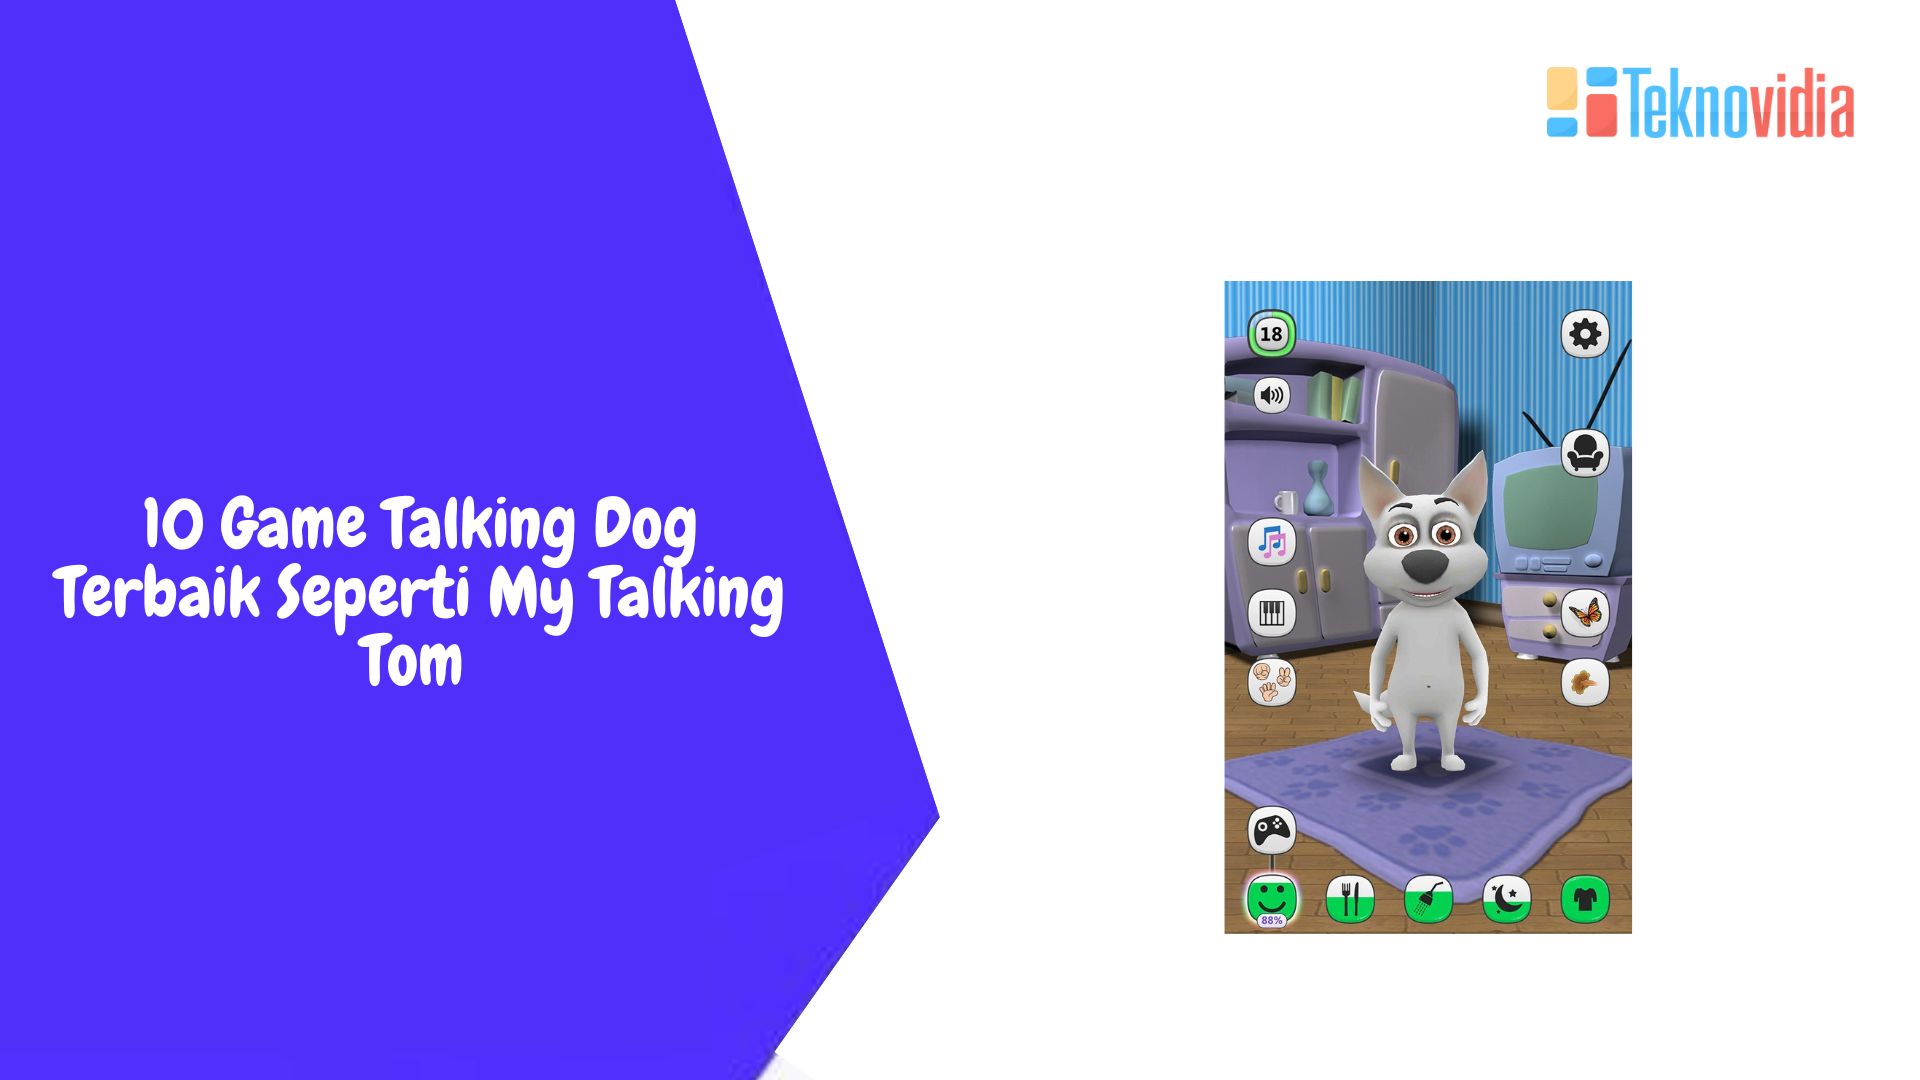 10 Game Talking Dog Terbaik Seperti My Talking Tom